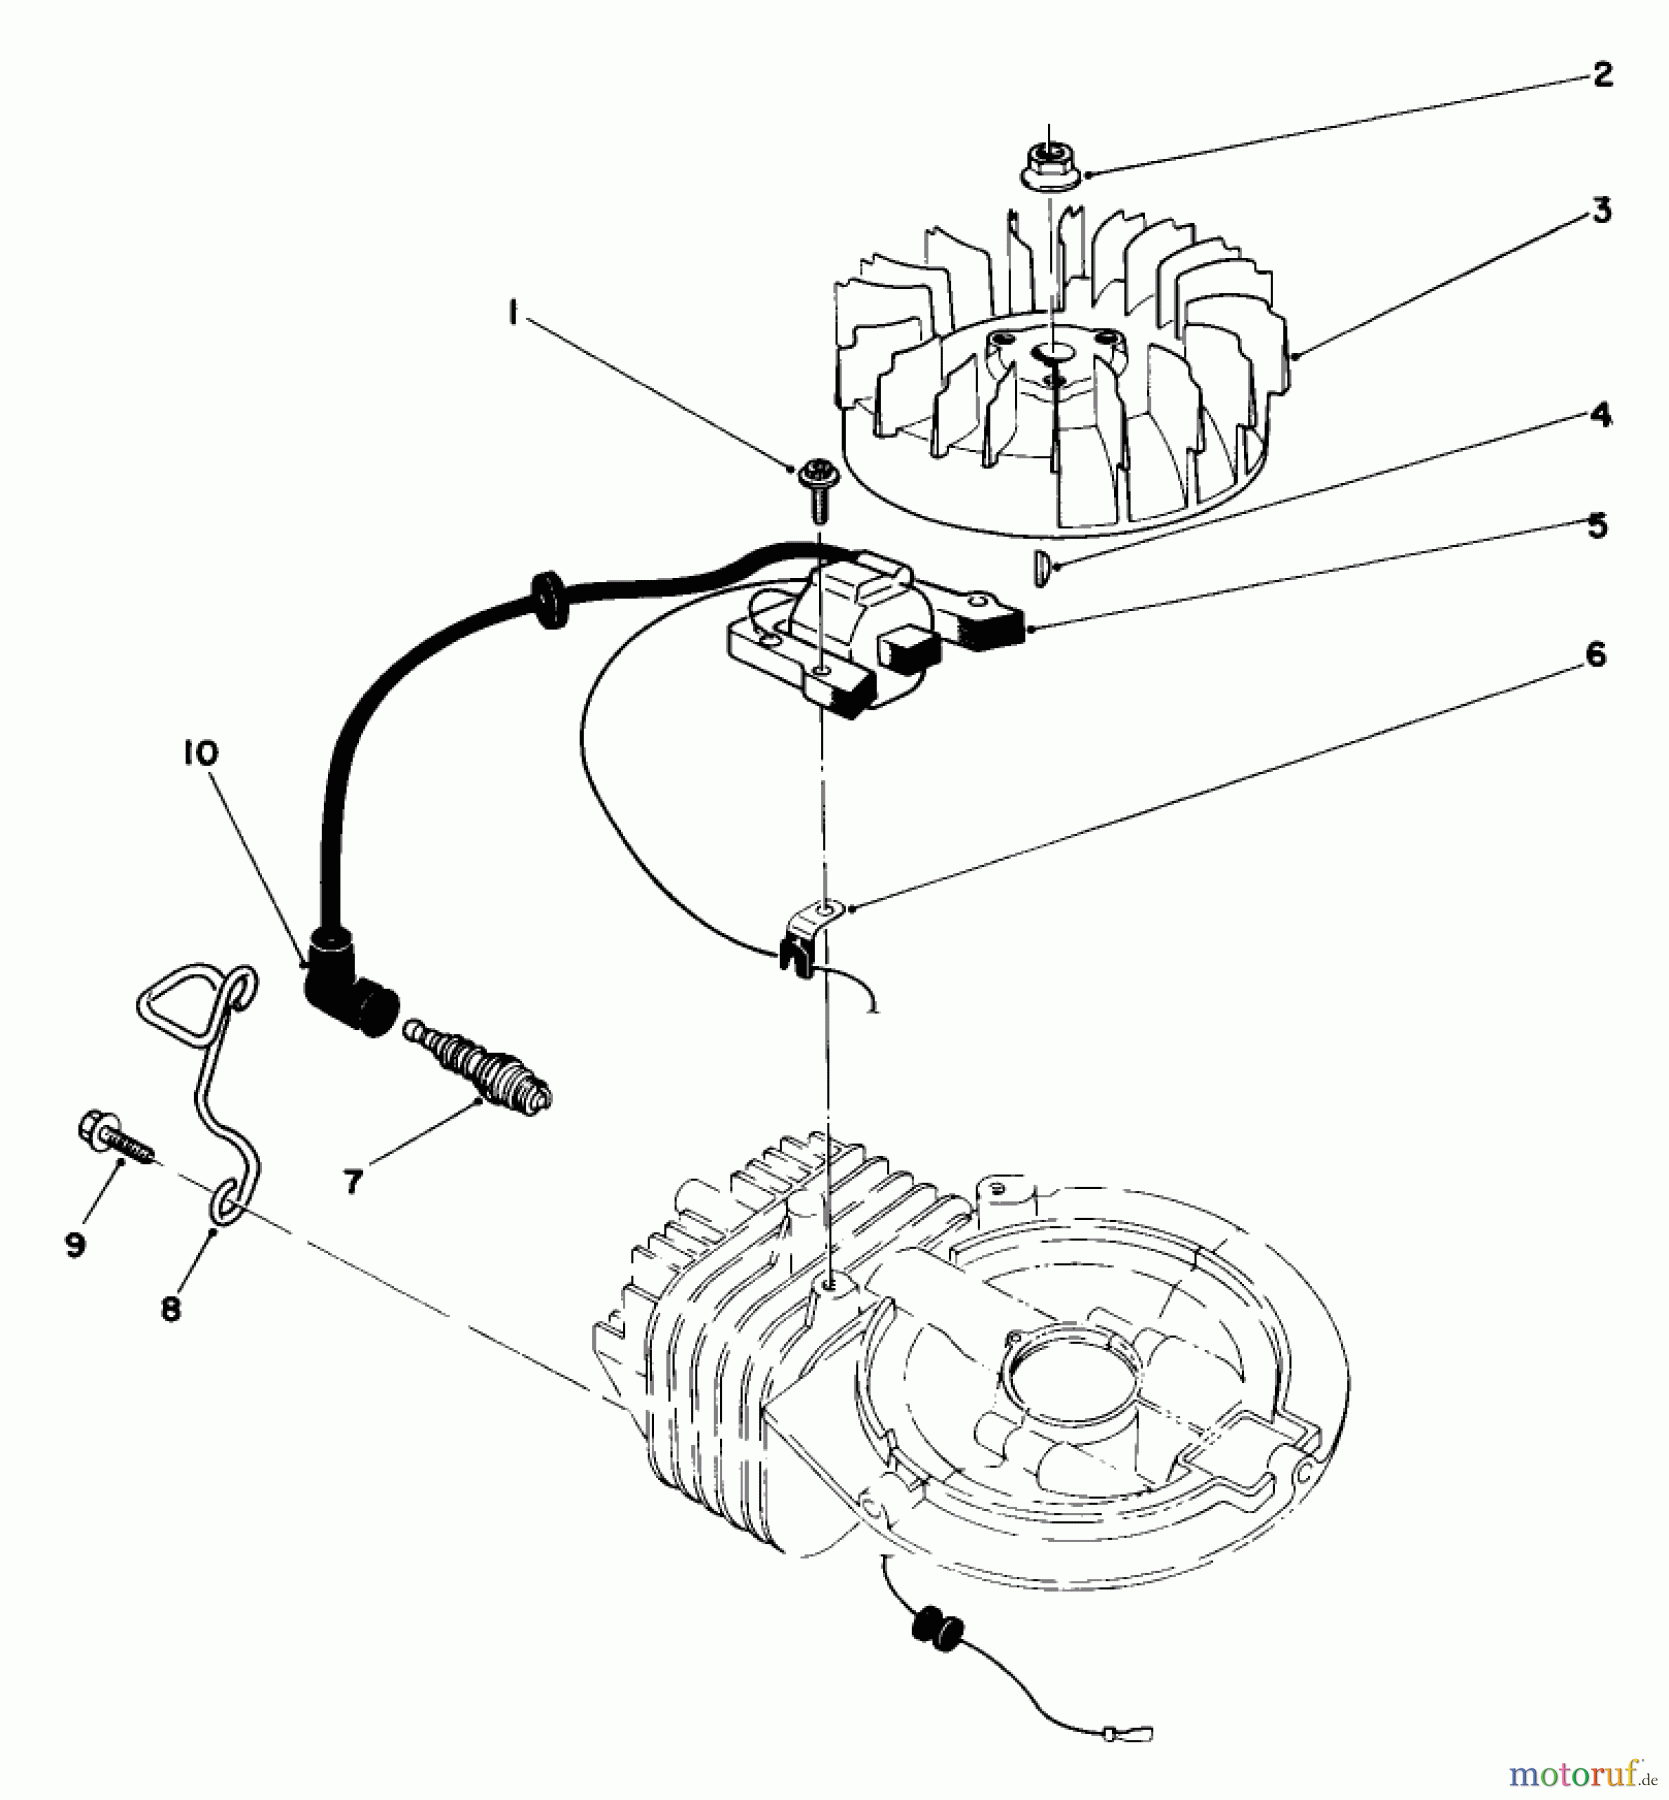  Toro Neu Mowers, Walk-Behind Seite 2 22030 - Toro Lawnmower, 1987 (7000001-7999999) ENGINE ASSEMBLY MODEL NO. 47PG6 #2